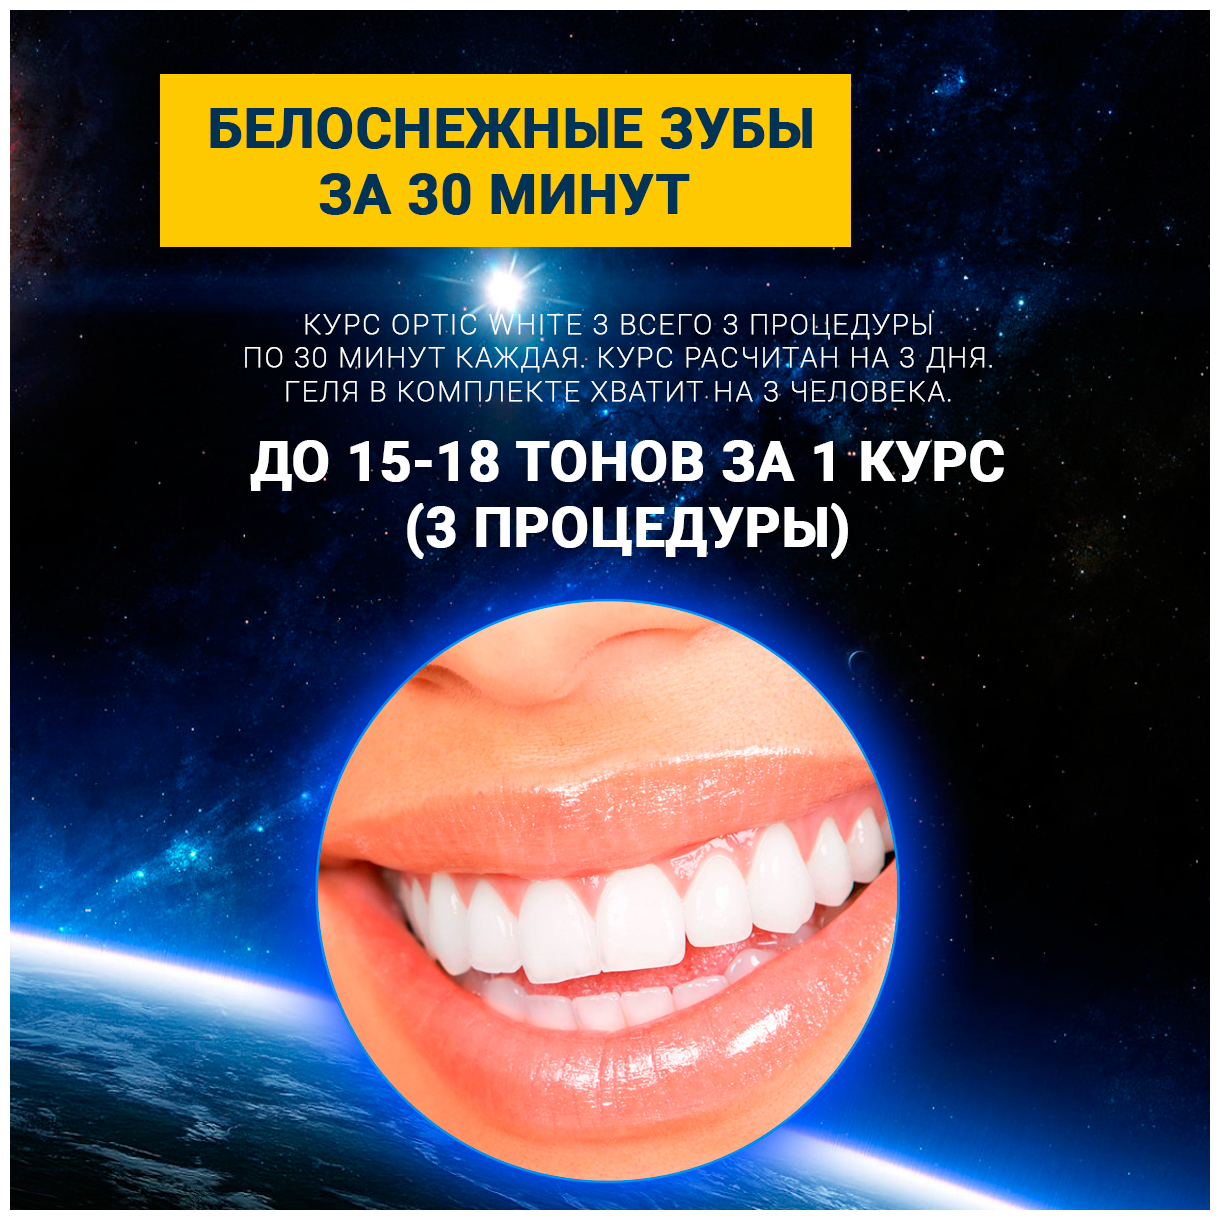 Электронная световая система отбеливания зубов активным кислородом - Optic White 3 набор для домашнего применения